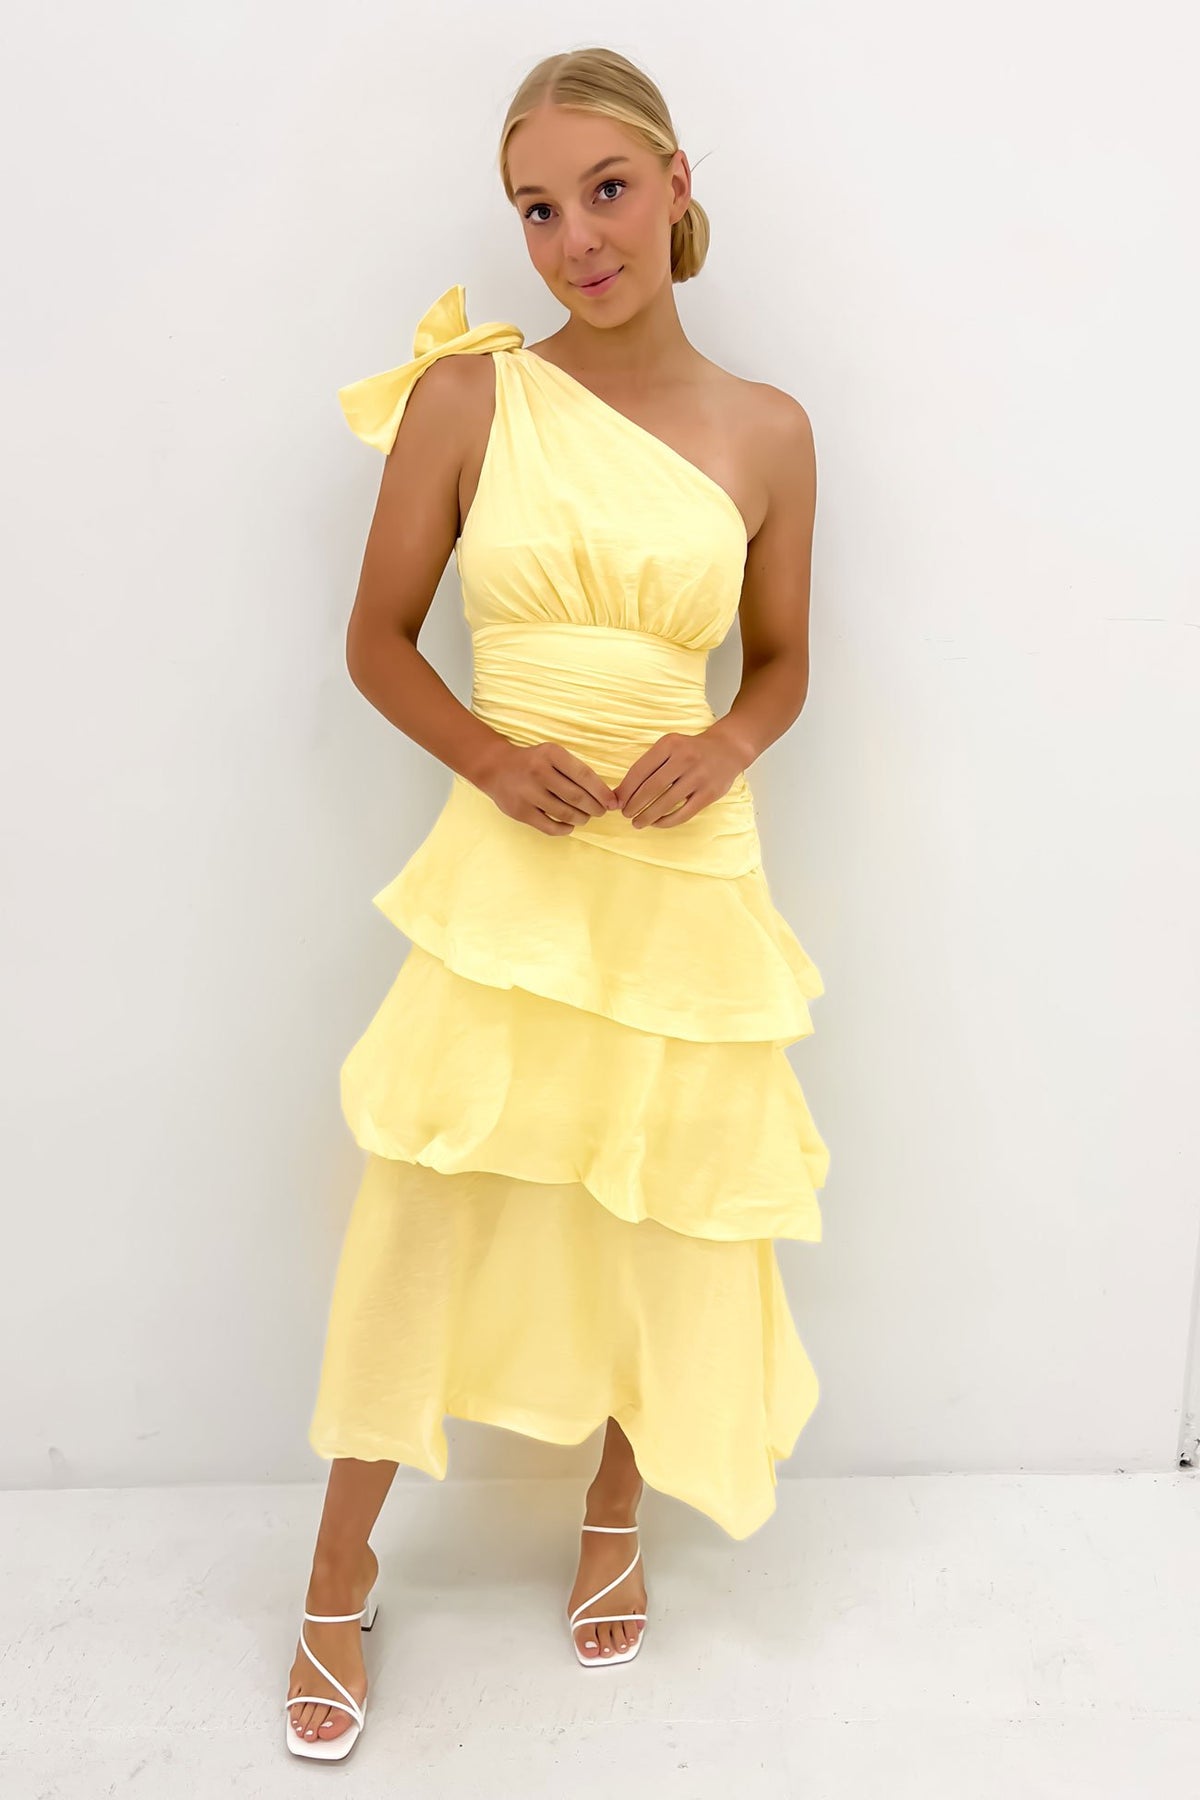 https://www.jeanjail.com.au/cdn/shop/products/Seema-Midi-Dress-Yellow-fjpg_1200x.jpg?v=1699934699